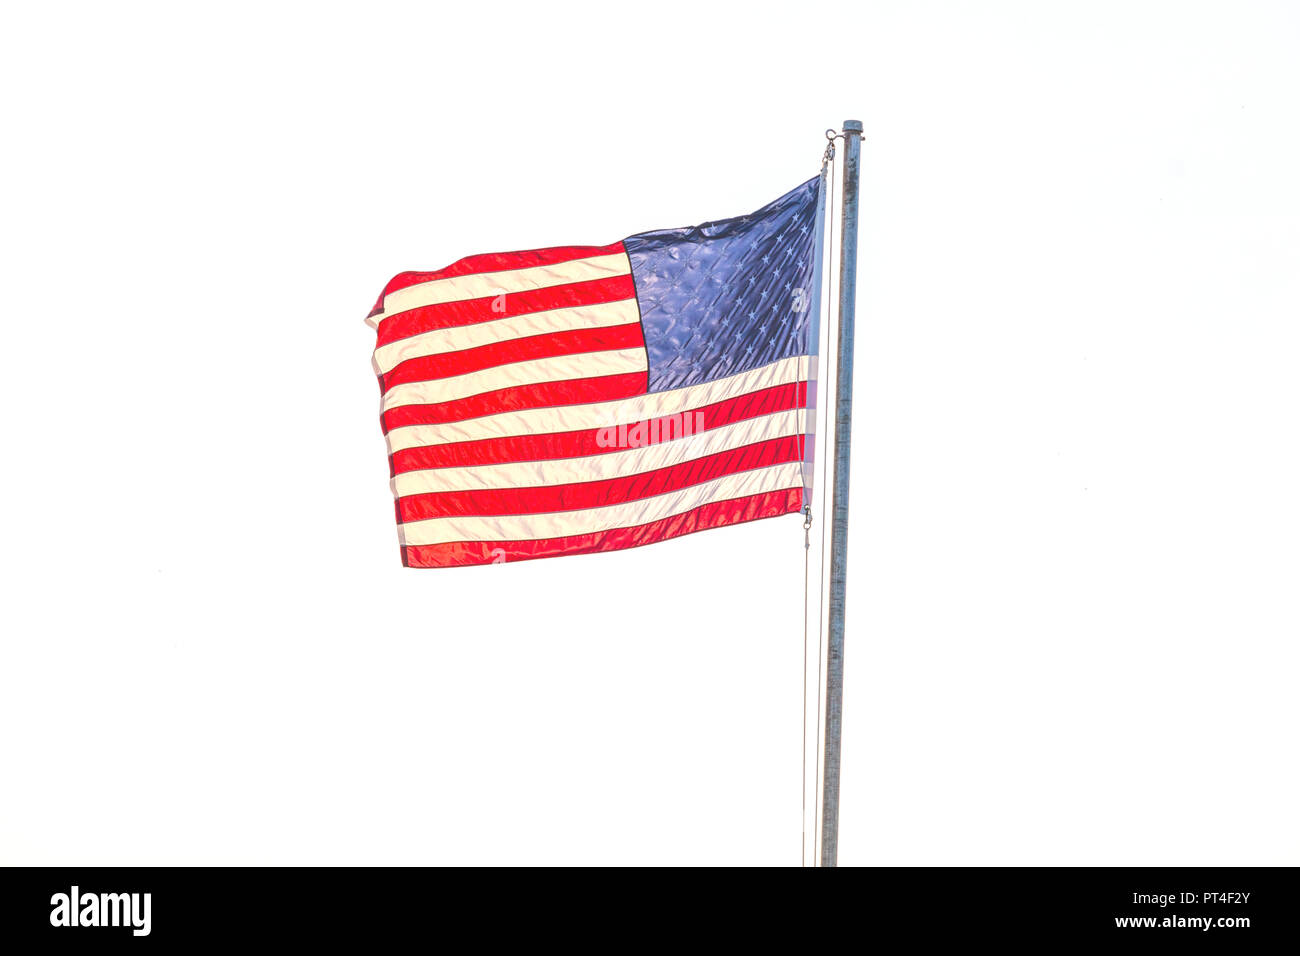 Bandera de los Estados Unidos volando sobre un mástil de bandera aganist un fondo blanco. Foto de stock